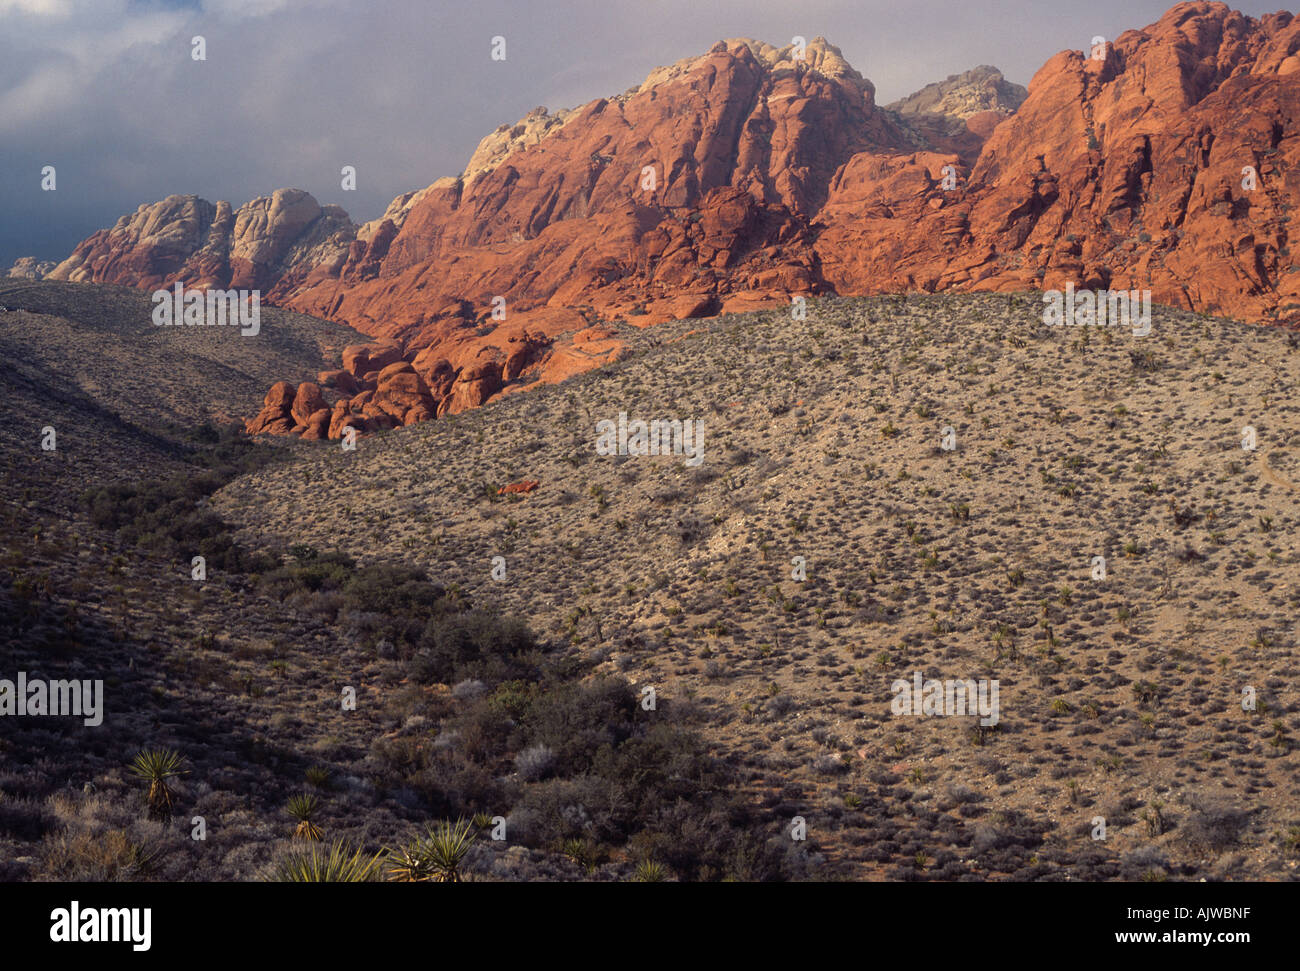 Mojave-Wüste Schlucht mit rotem Sandstein und grauem Kalkstein-Formationen, Red Rock Canyon National Conservation Area, Nevada Stockfoto